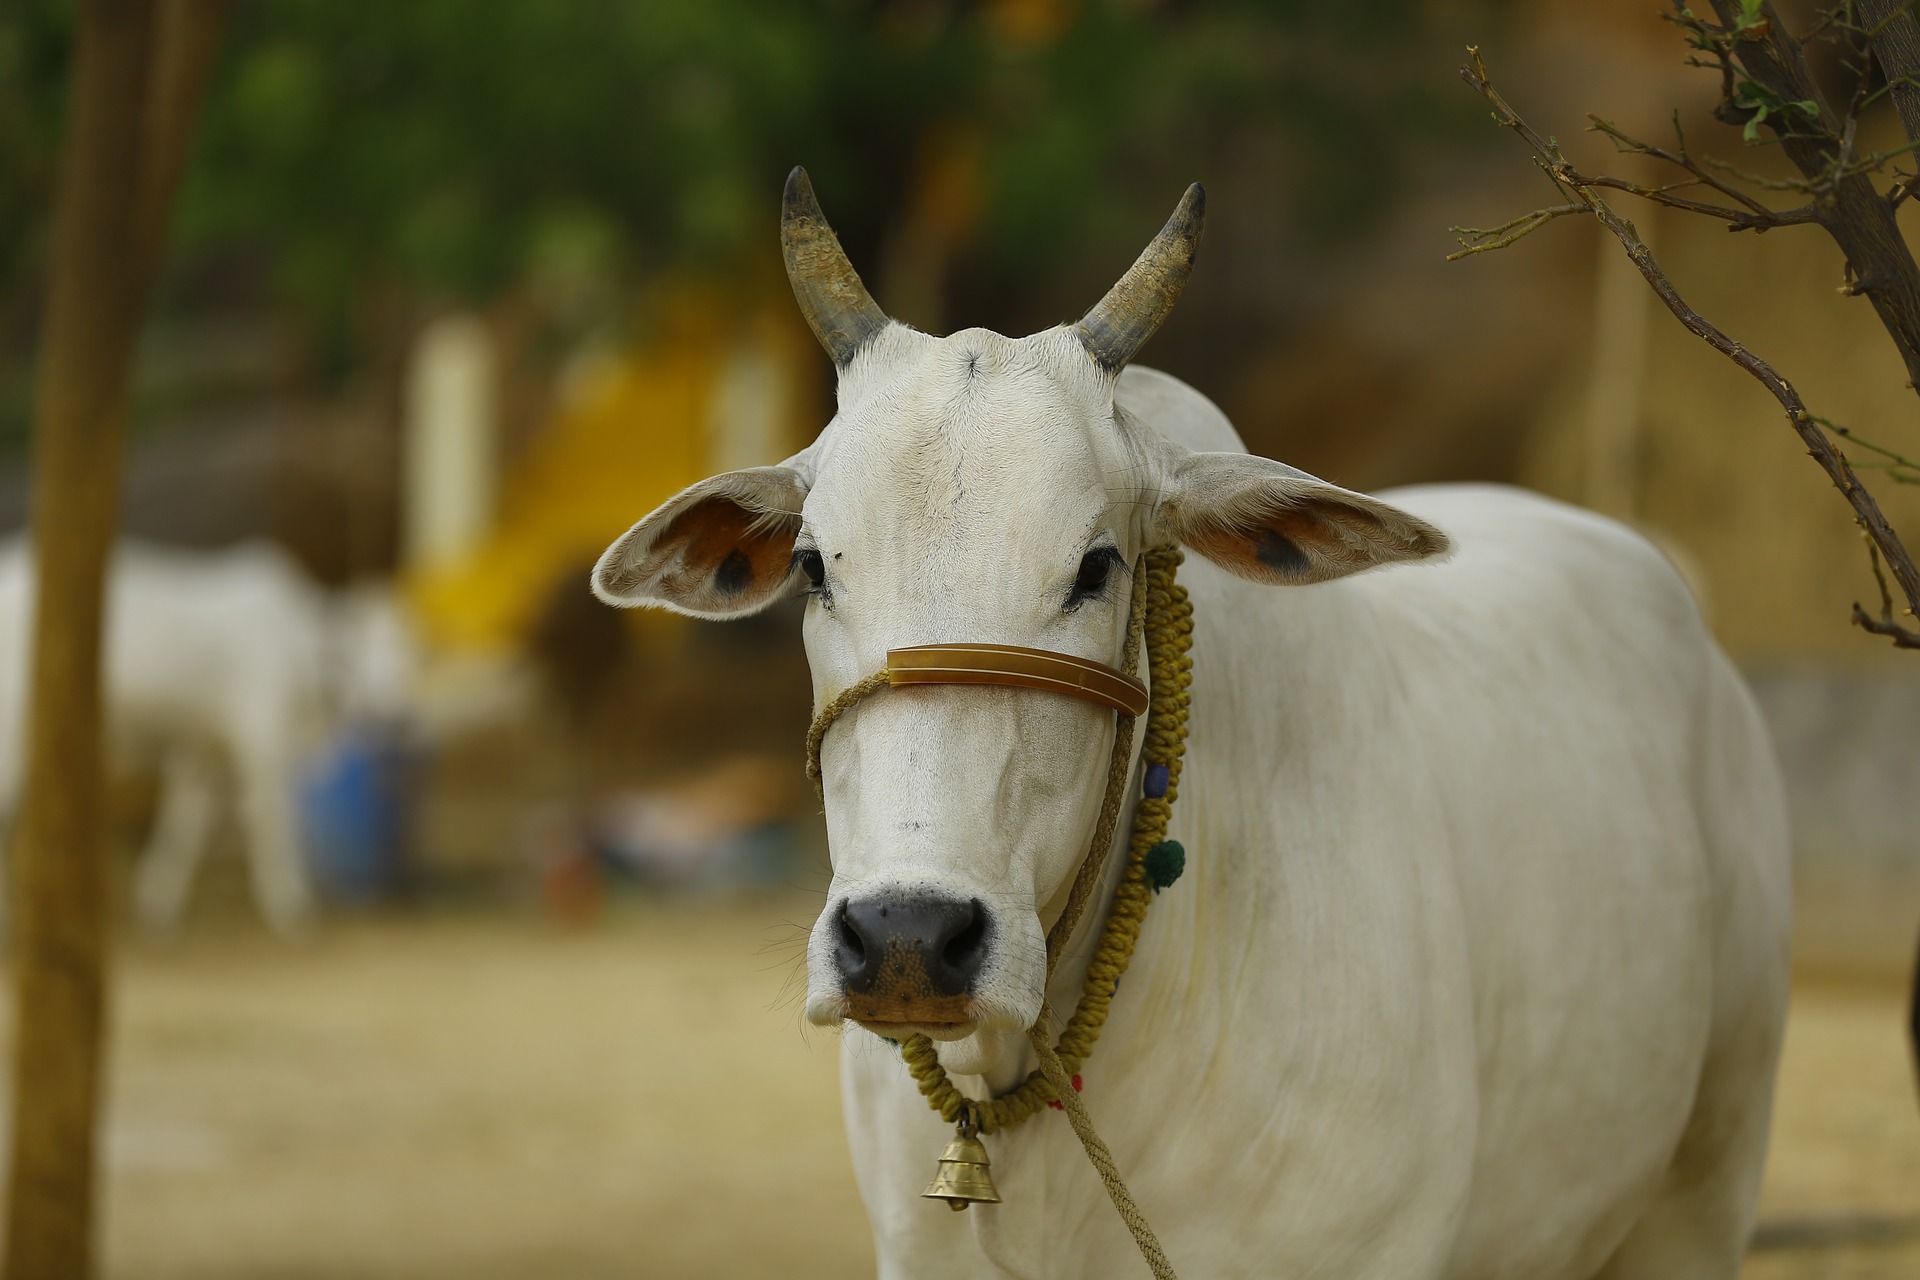 गाय के गोबर से रेडिएशन रोकने का दावा, राष्ट्रीय कामधेनु आयोग ने बनाई चिप